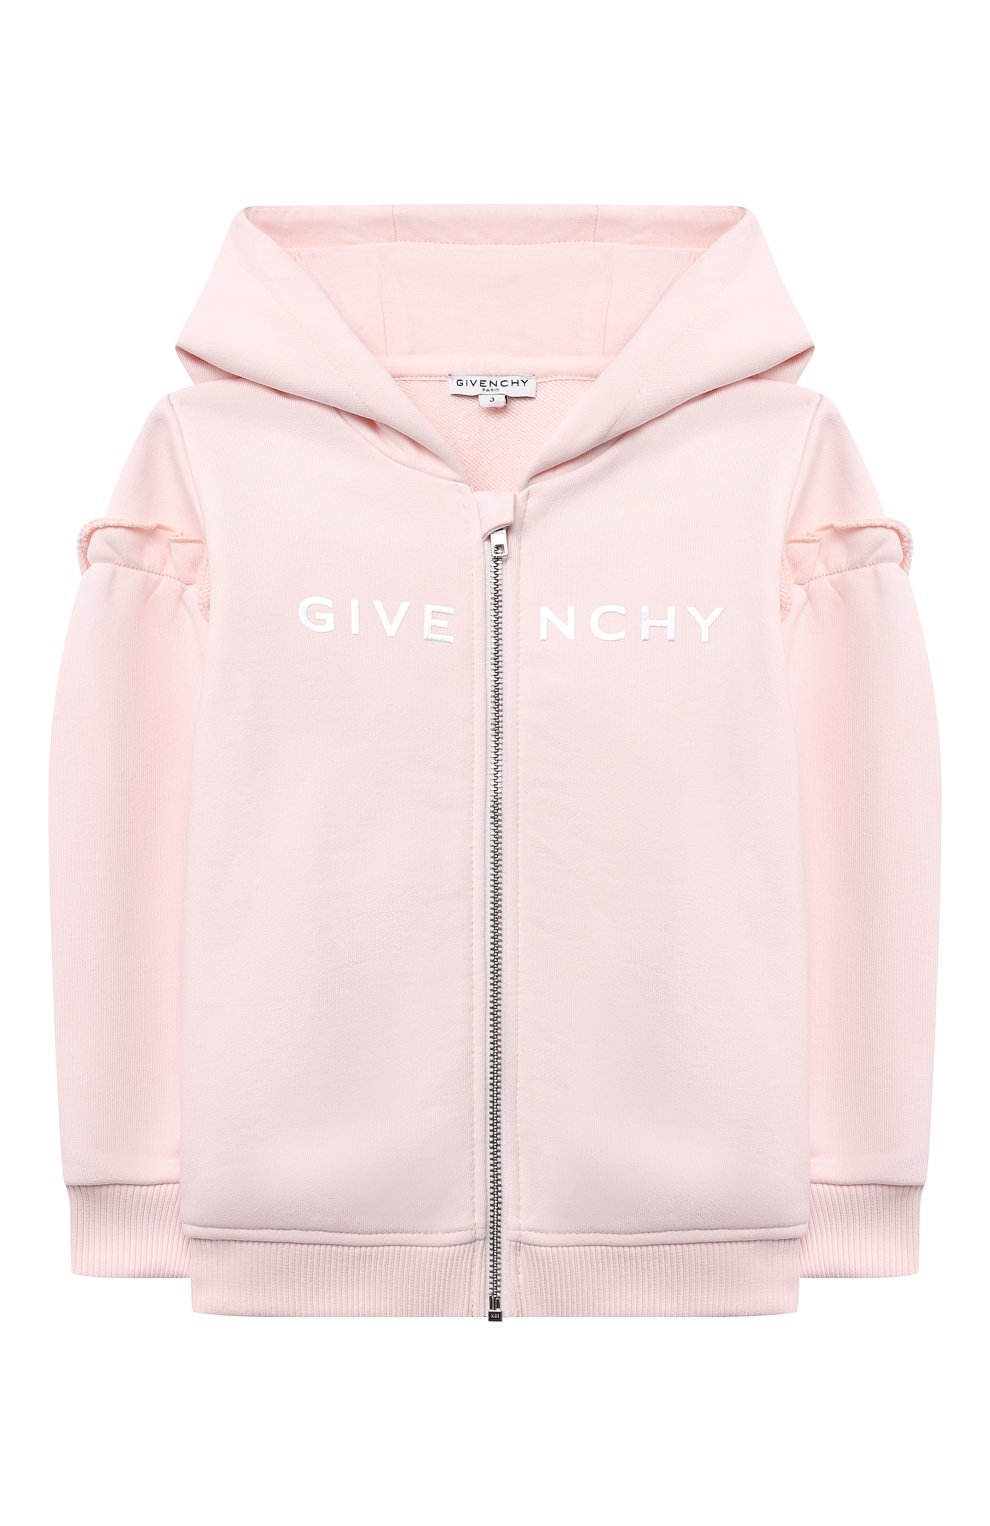 Кардиганы Givenchy, Хлопковая толстовка Givenchy, Тунис, Розовый, Хлопок: 100%;, 11802880  - купить